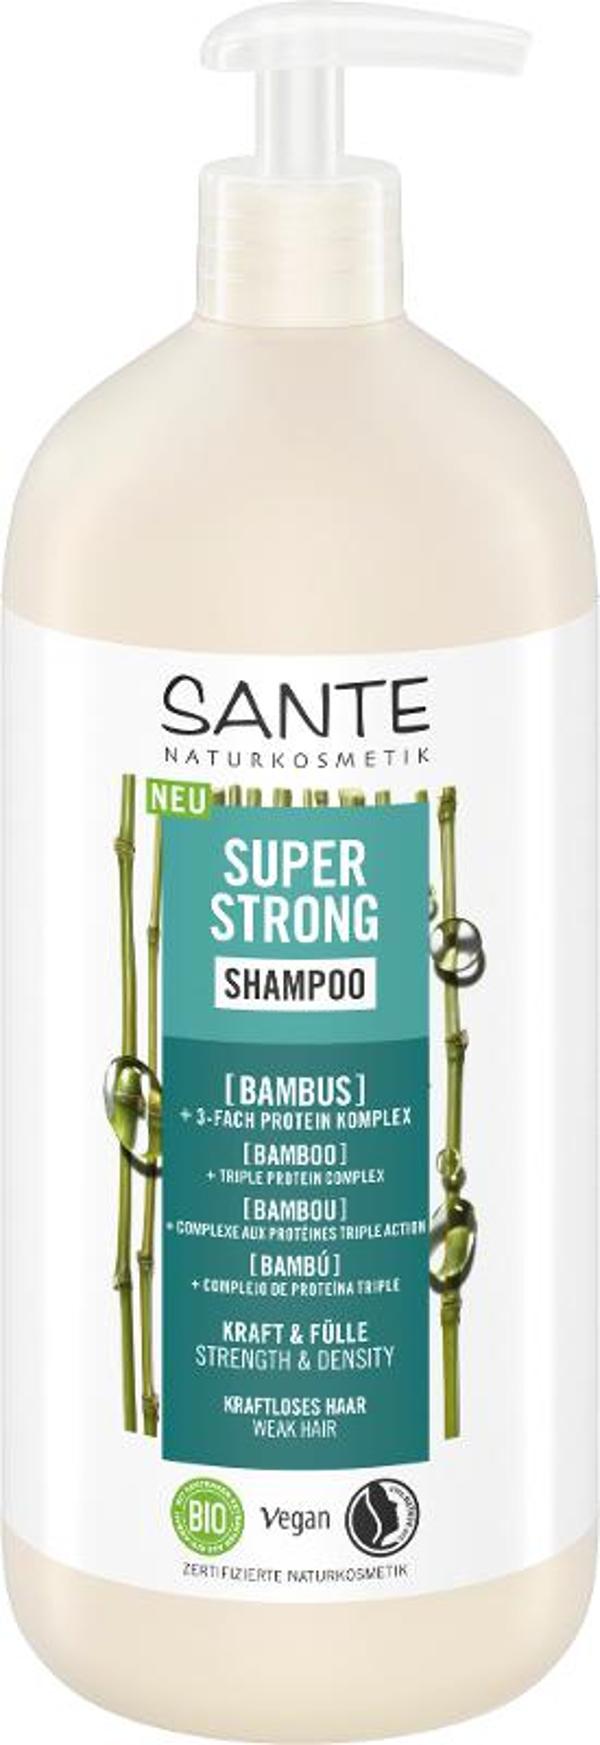 Produktfoto zu Super Strong Shampoo Bambus 950ml Sante